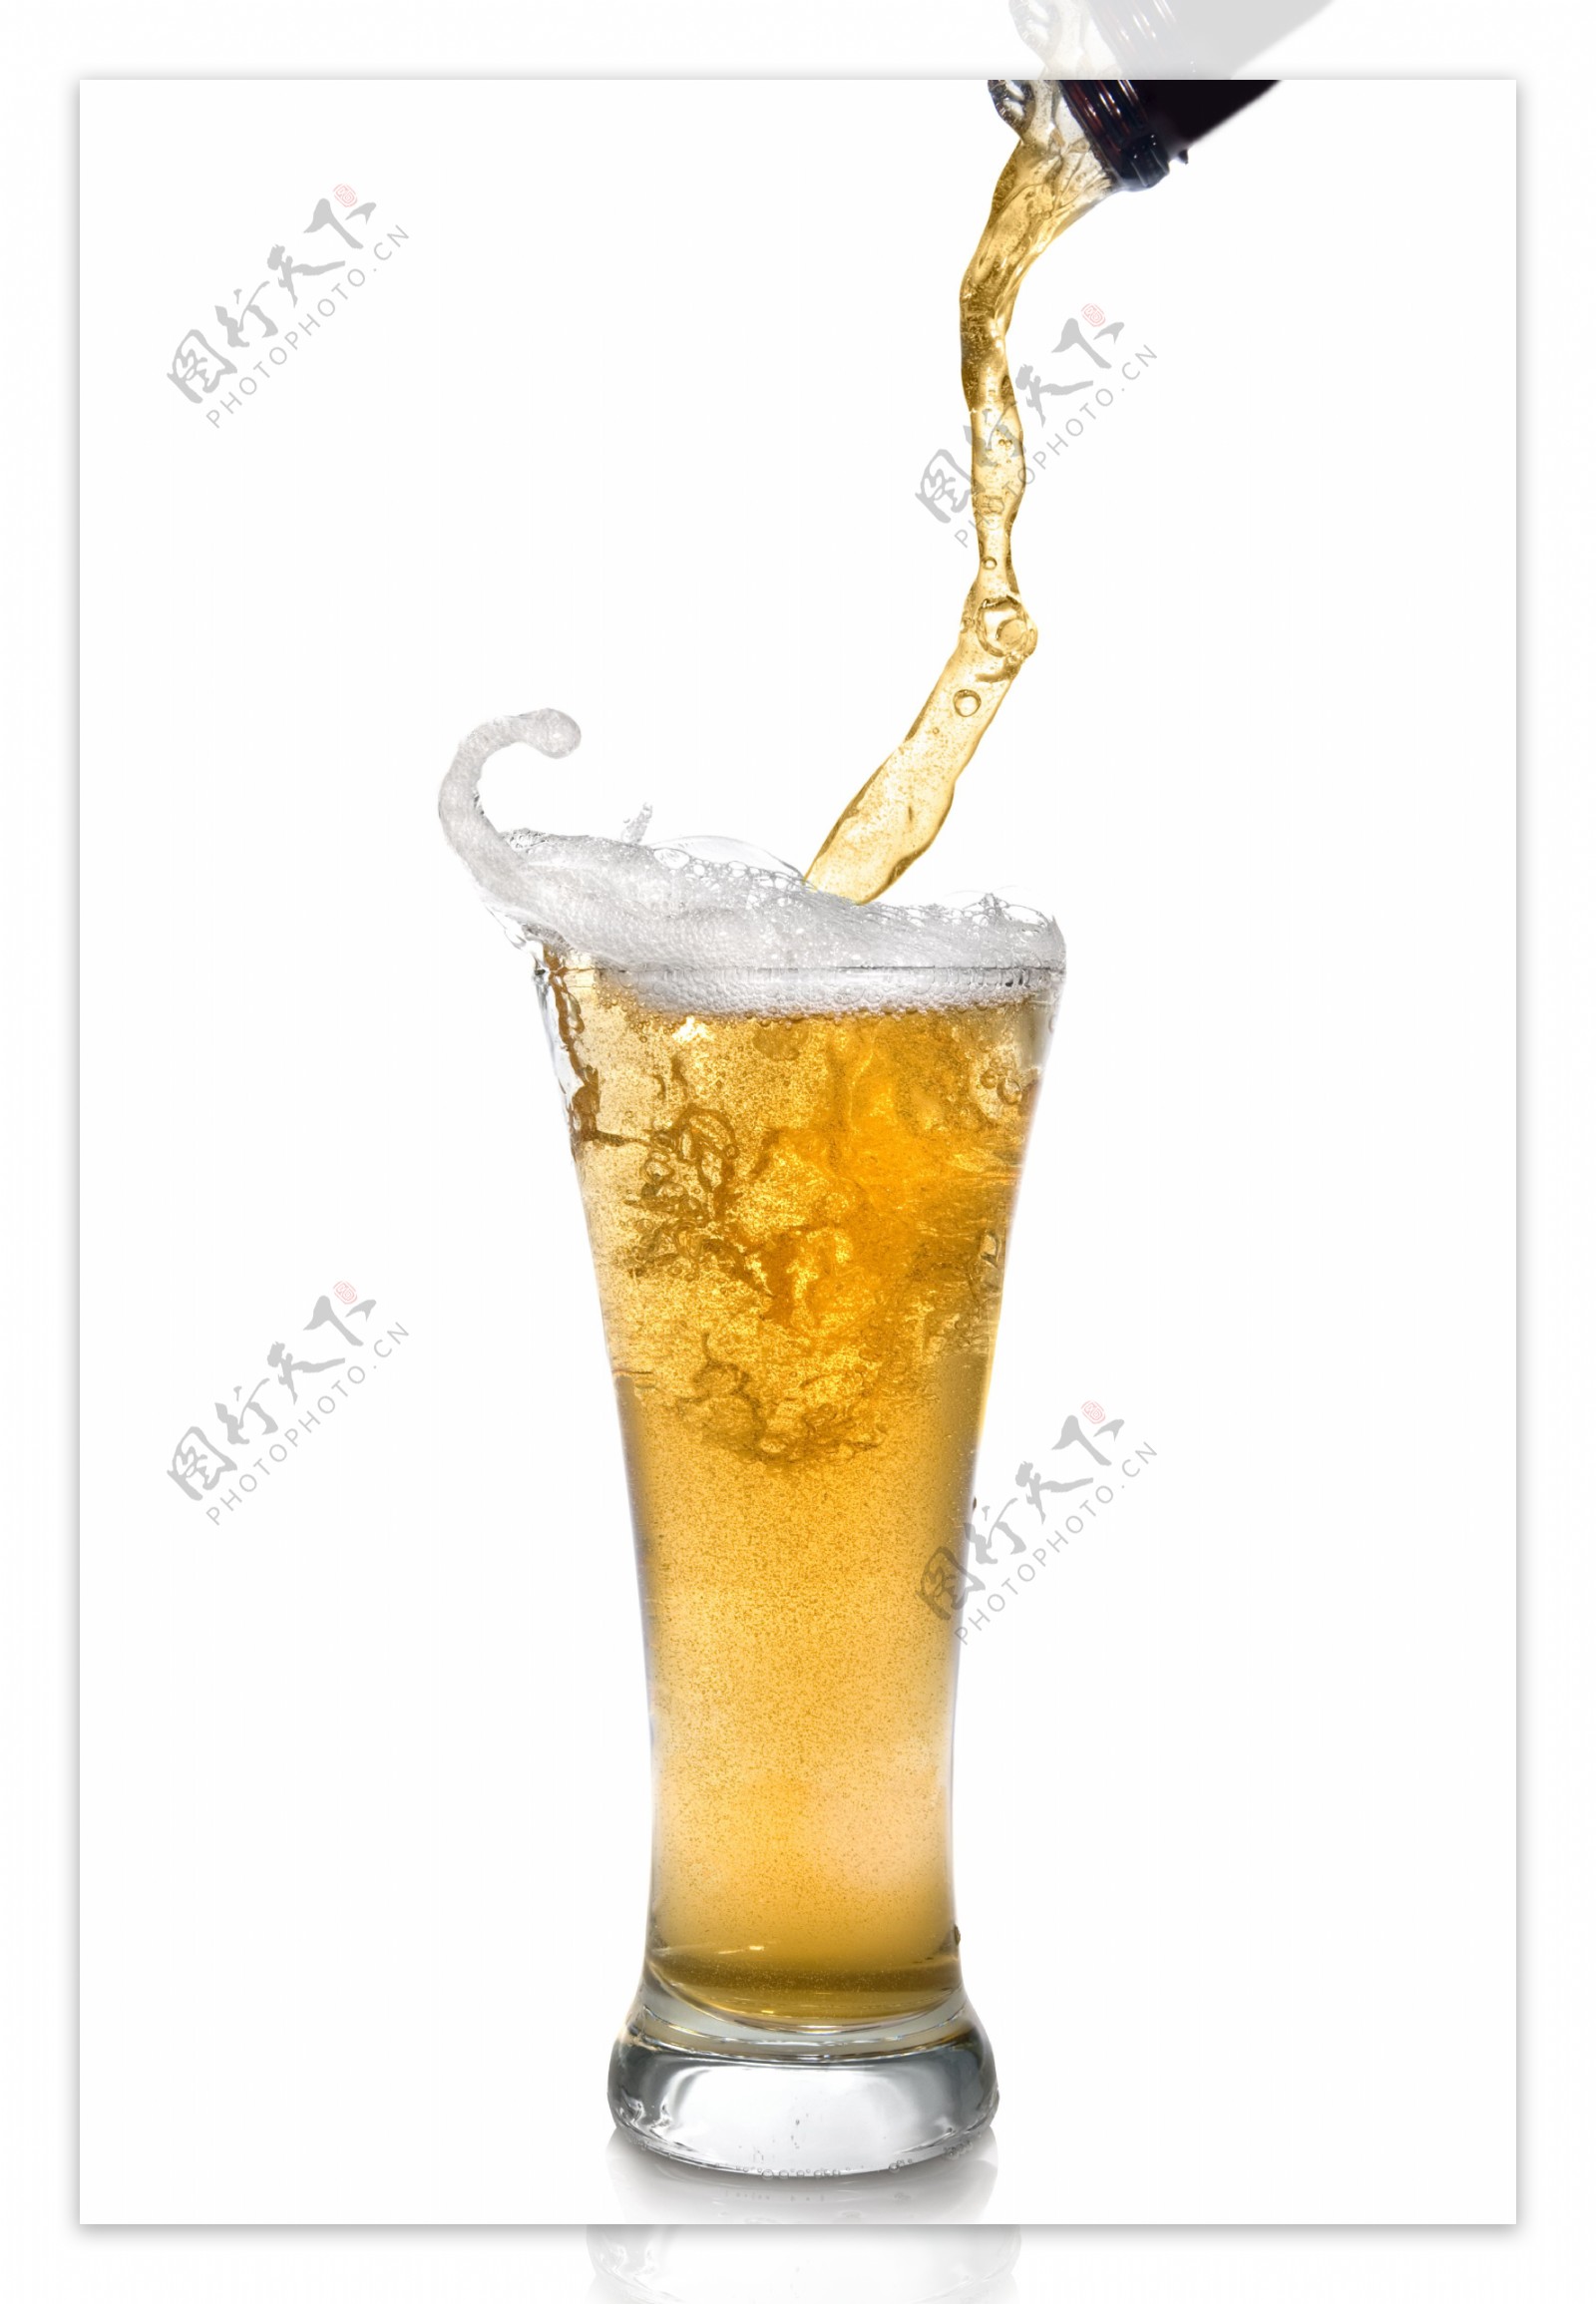 空白啤酒广告图片素材